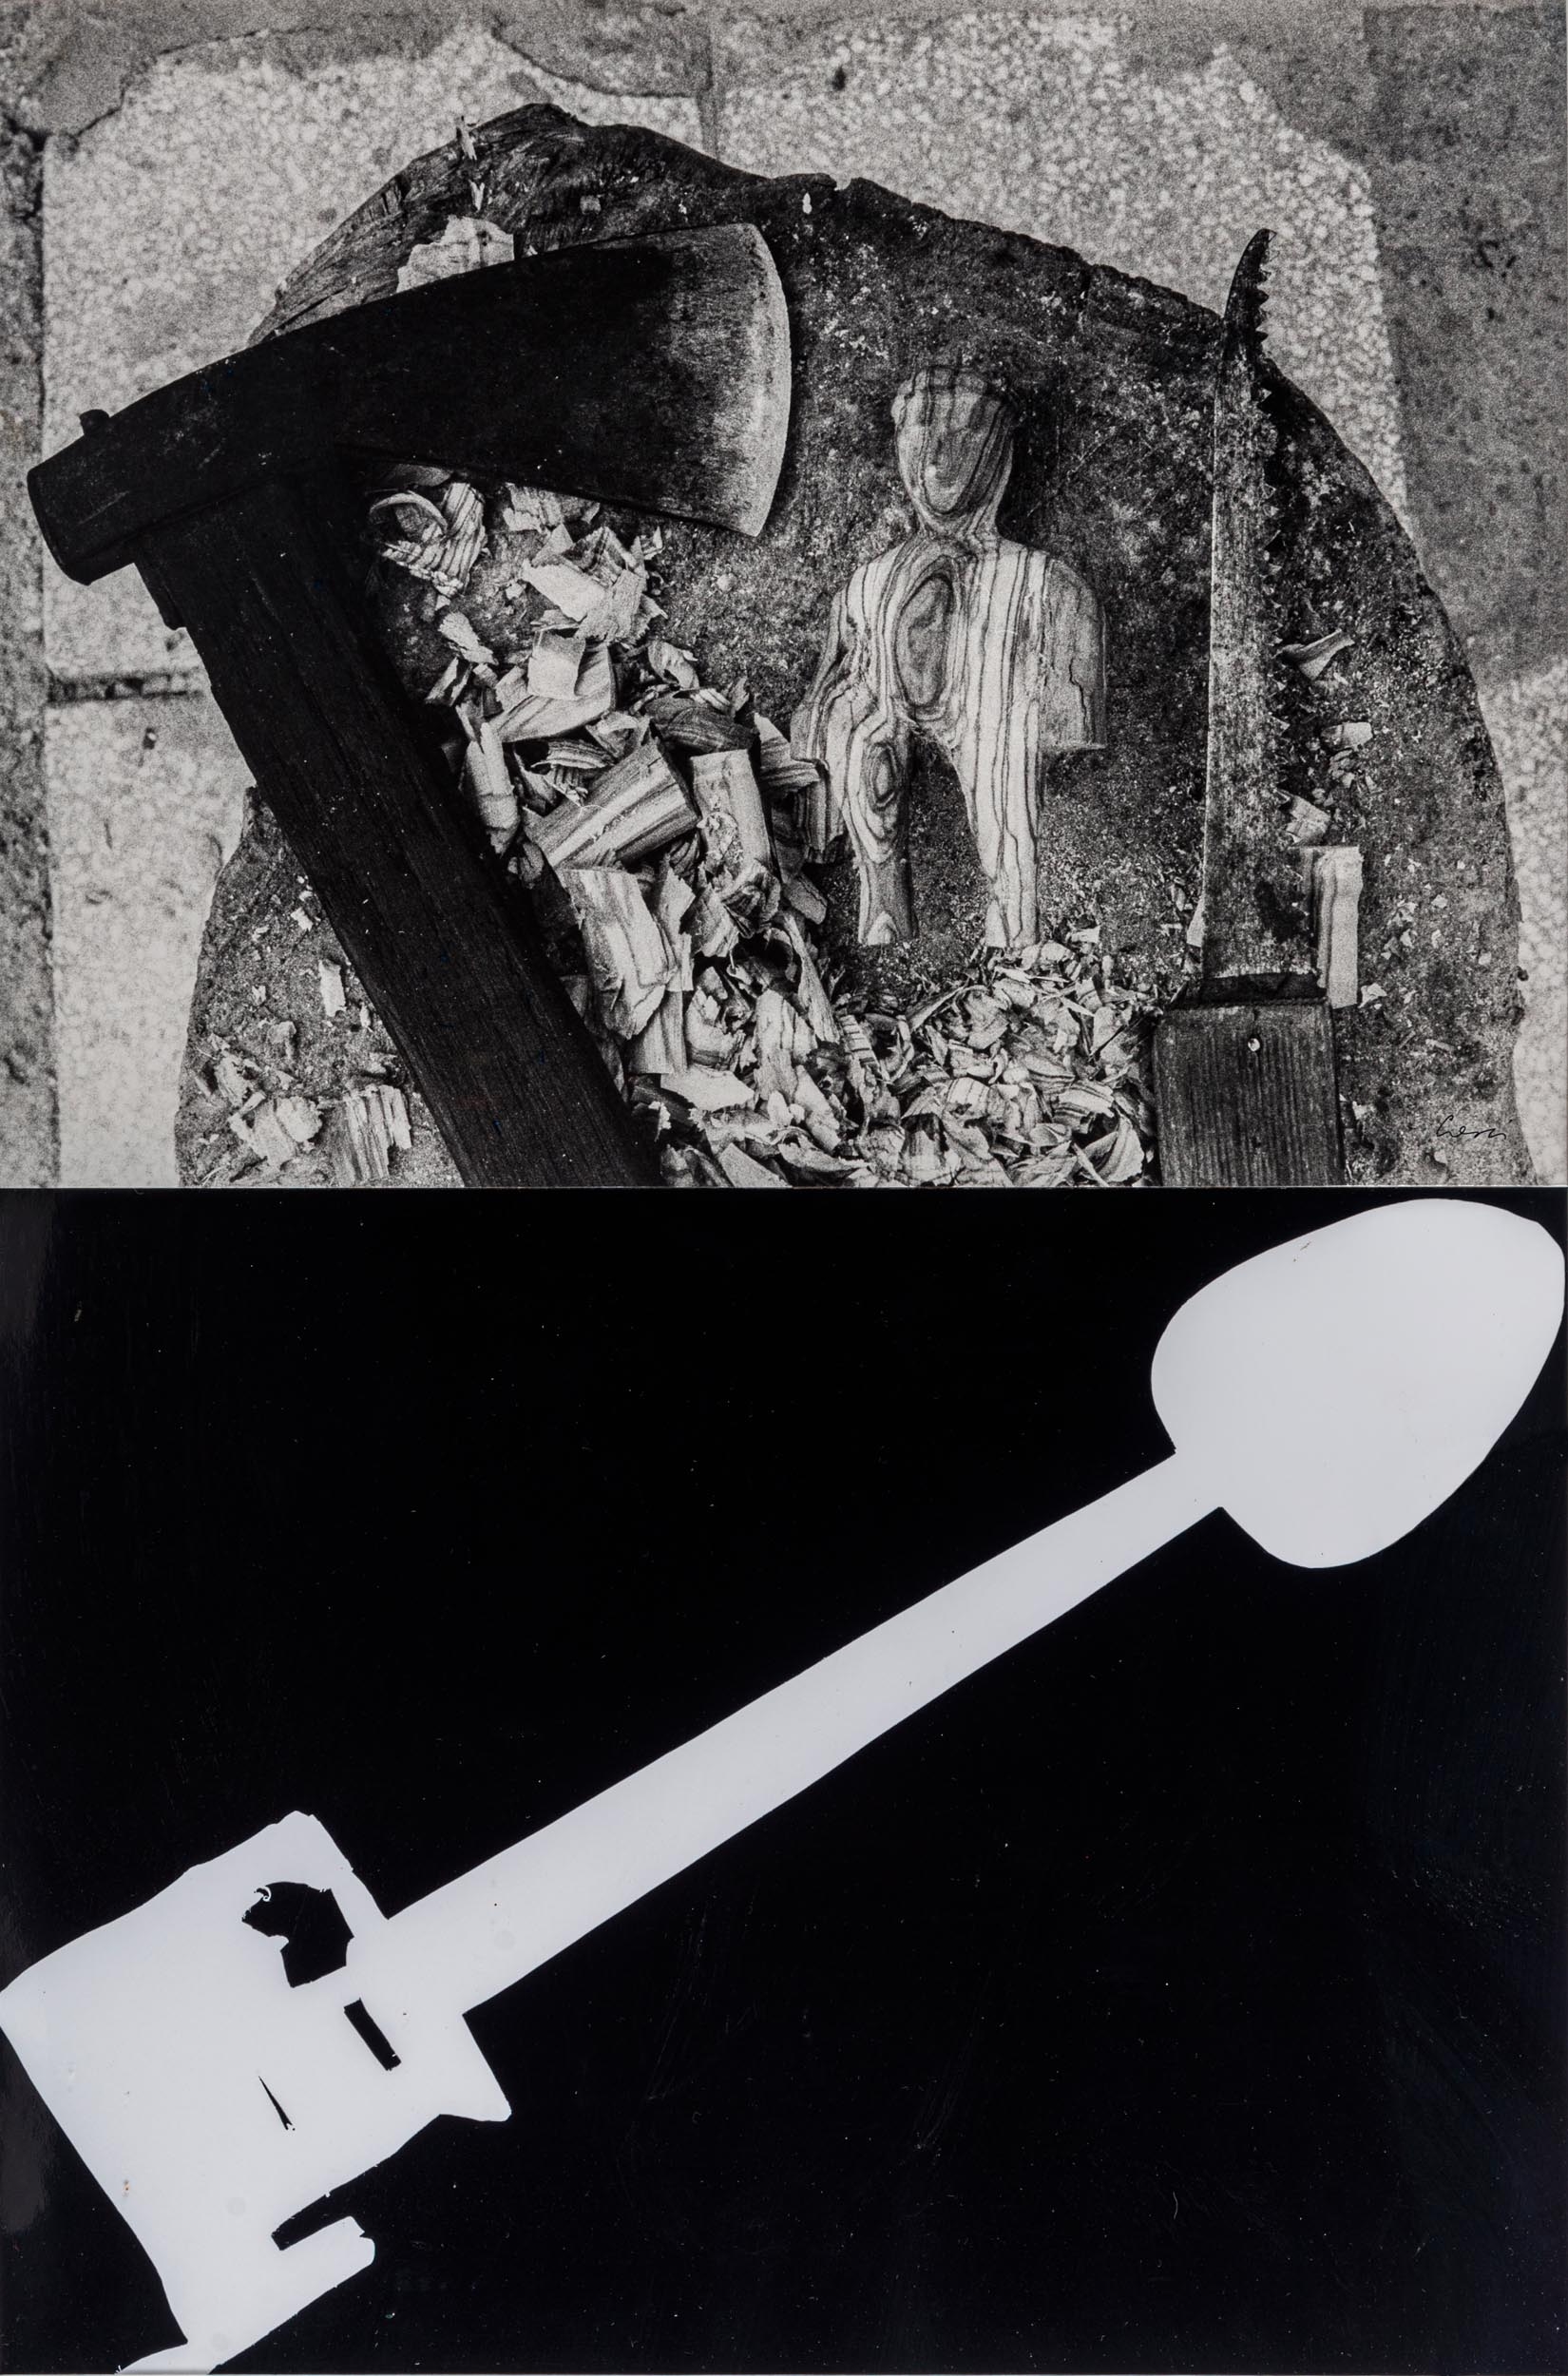 Untitled, DALLA SERIE MISURAZIONI by Mario Cresci, 1977 - 1979